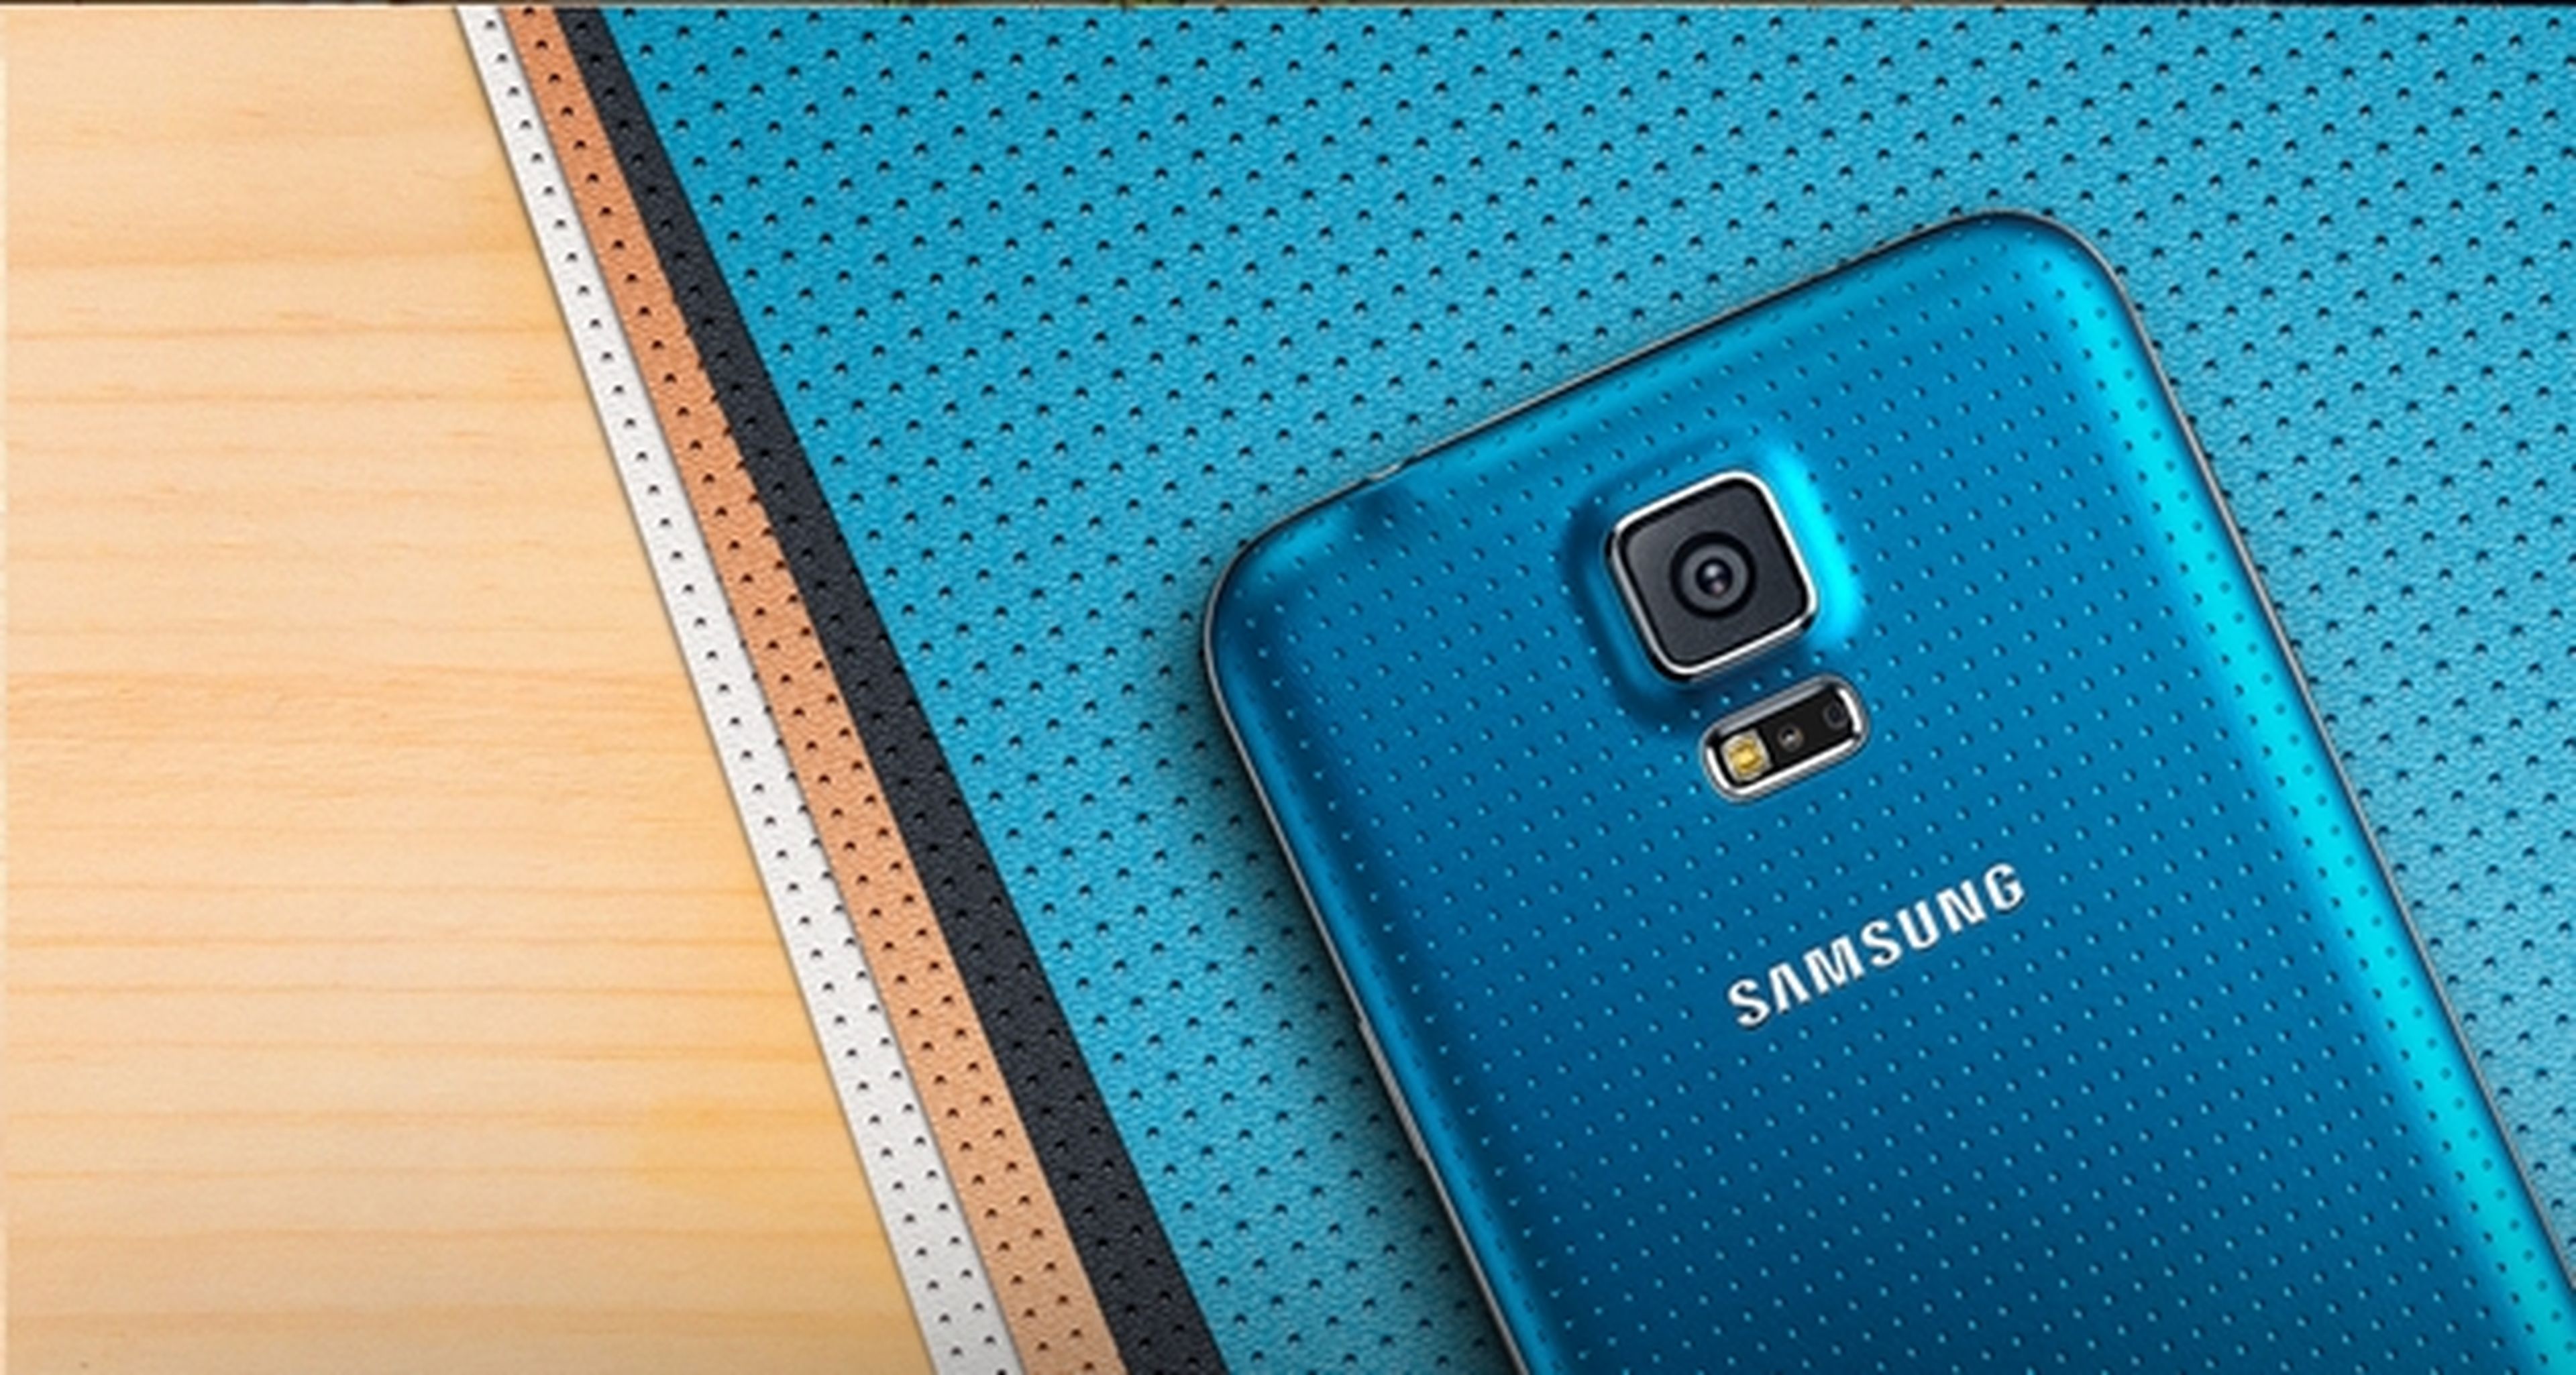 Samsung Galaxy S5 bajas ventas